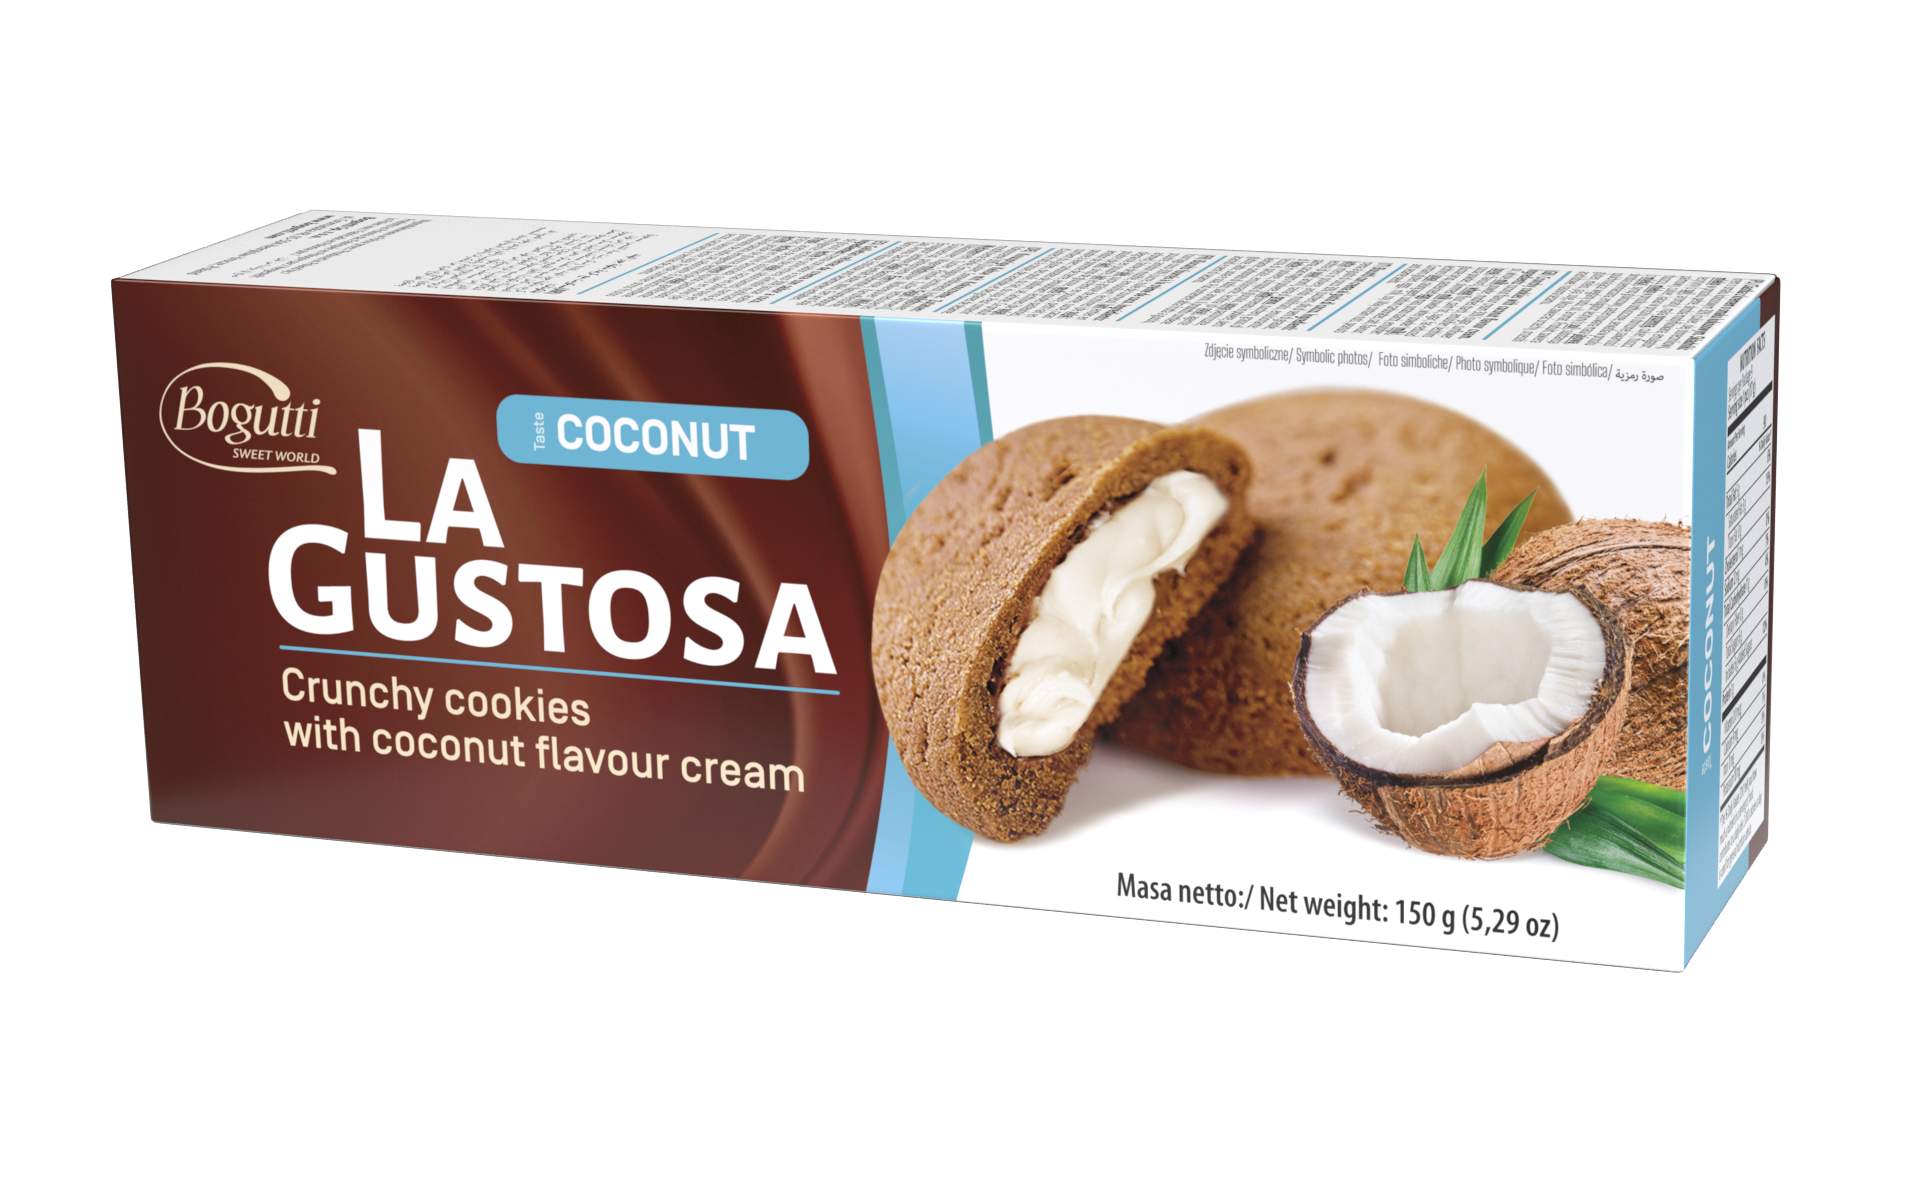 La Gustosa – Kruche ciastka z kremem o smaku kokosowym